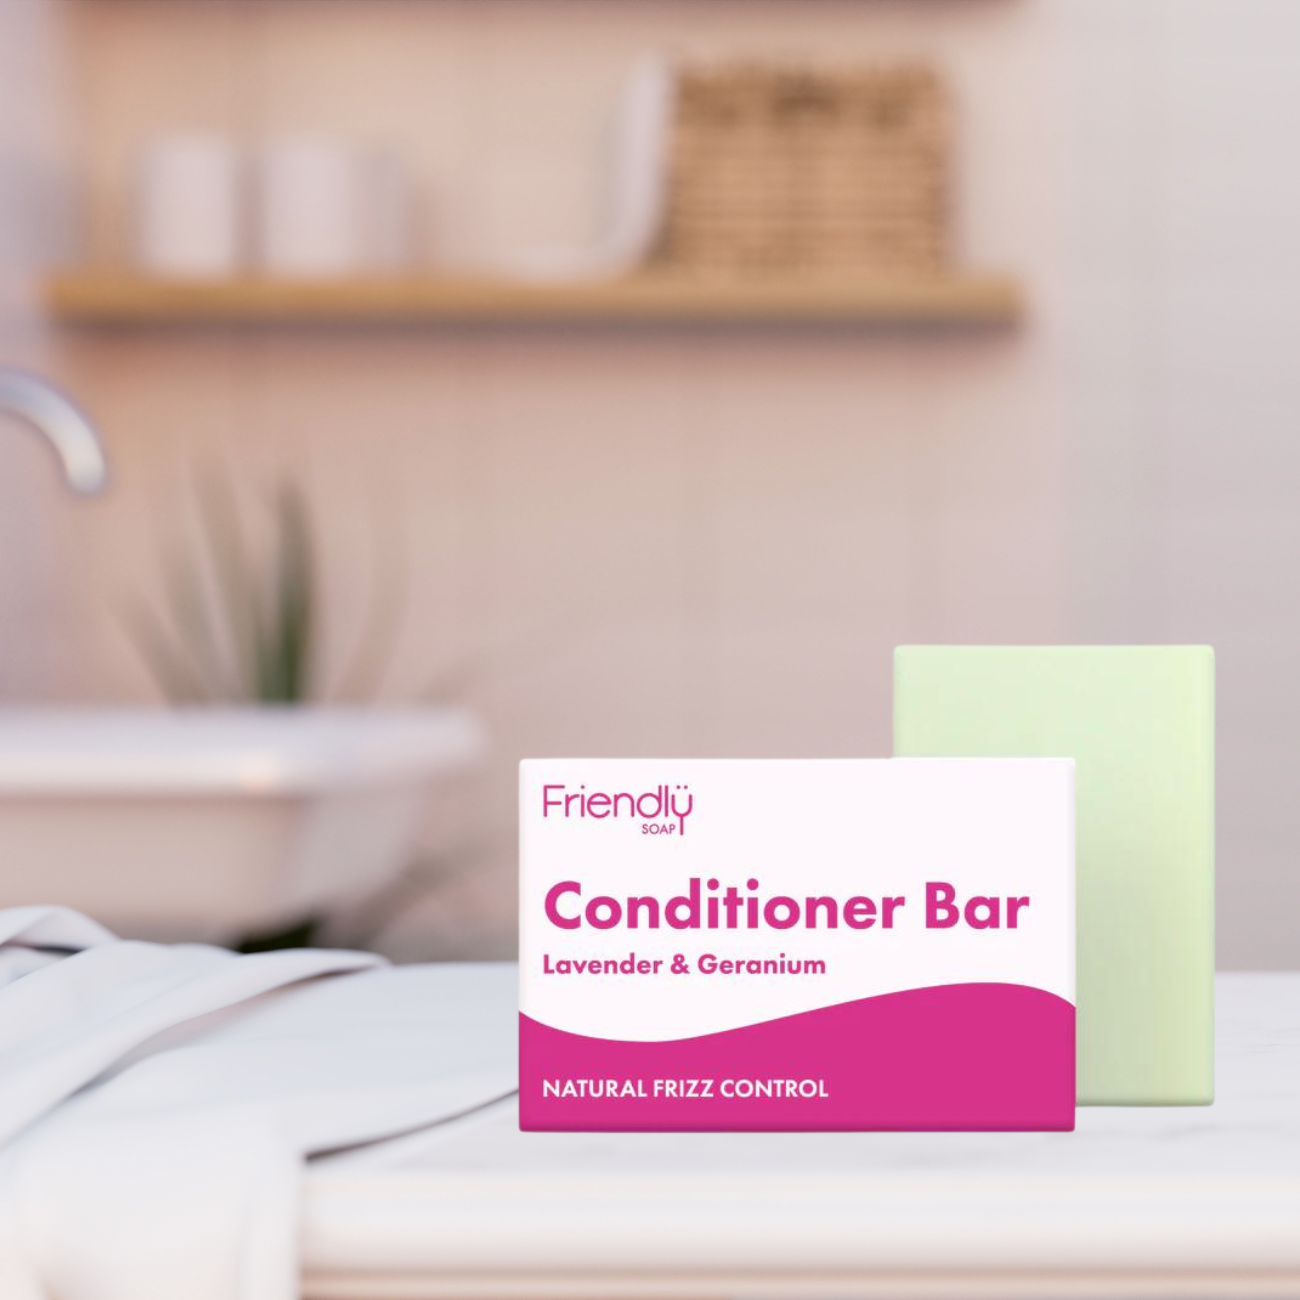 Conditioner Bar Lavender & Geranium 90g